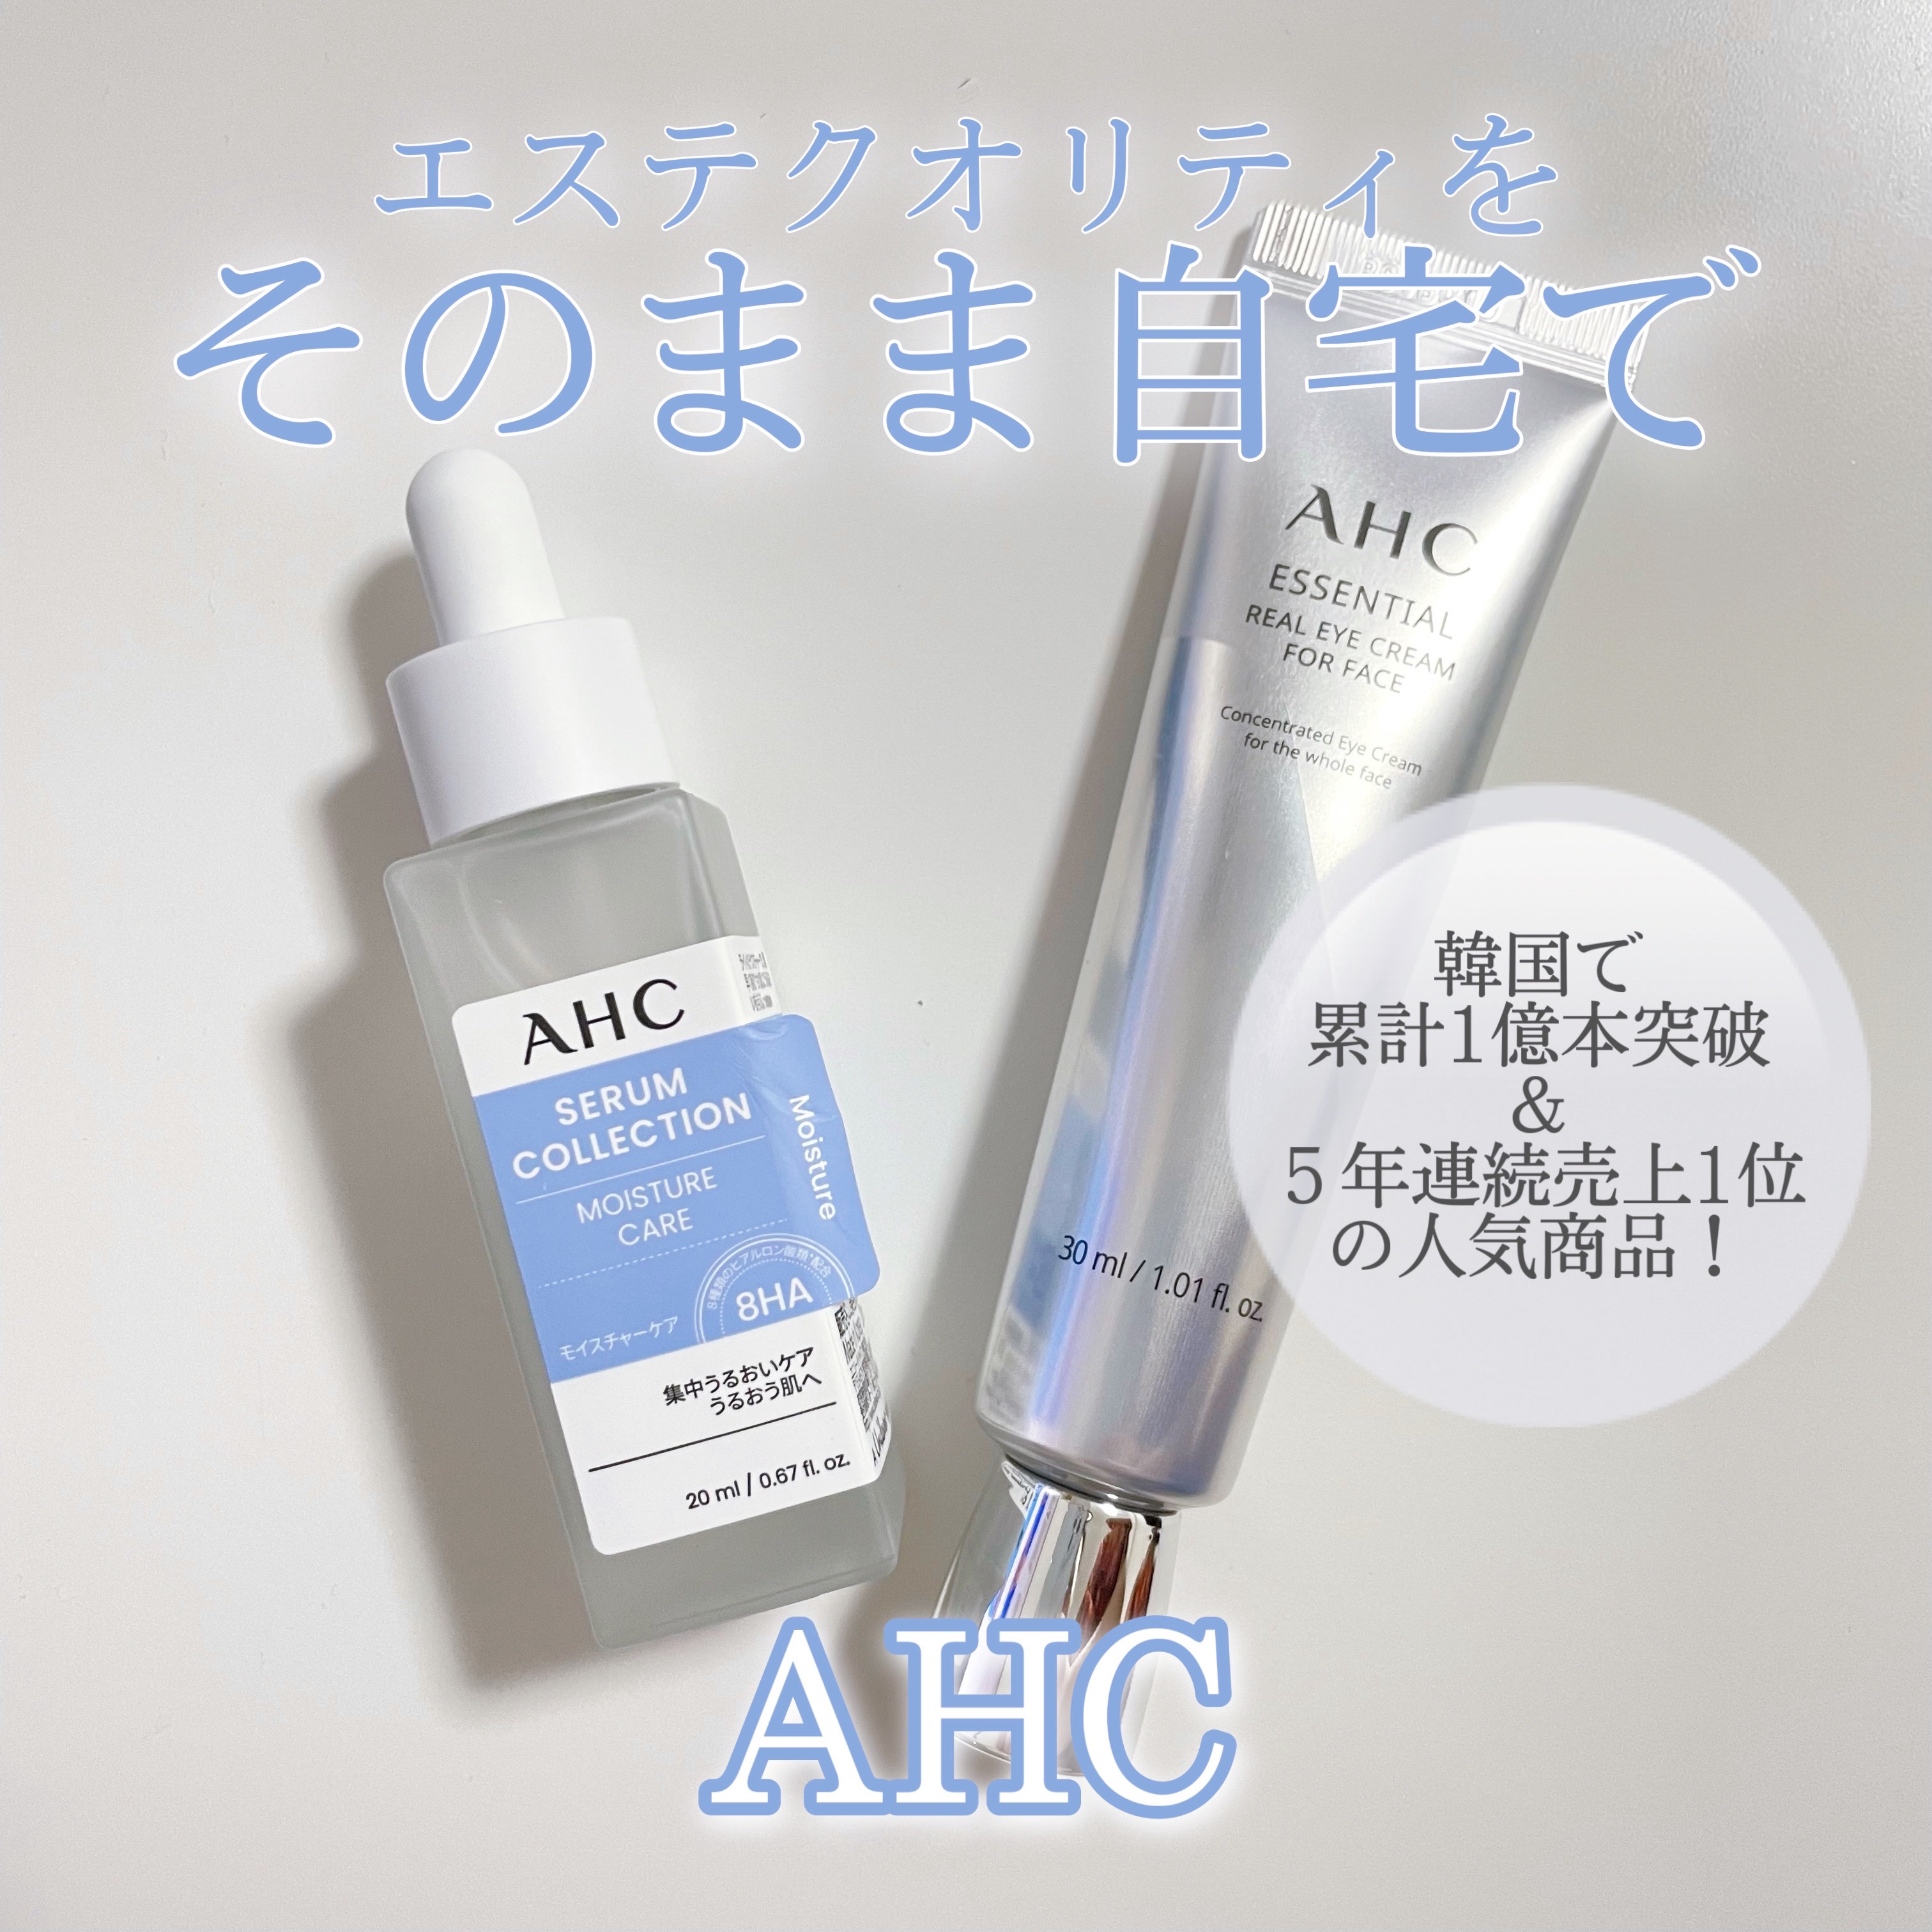 メーカー再生品 AHC アイクリーム2種 セラムコレクションモイスチャーケア 美容液